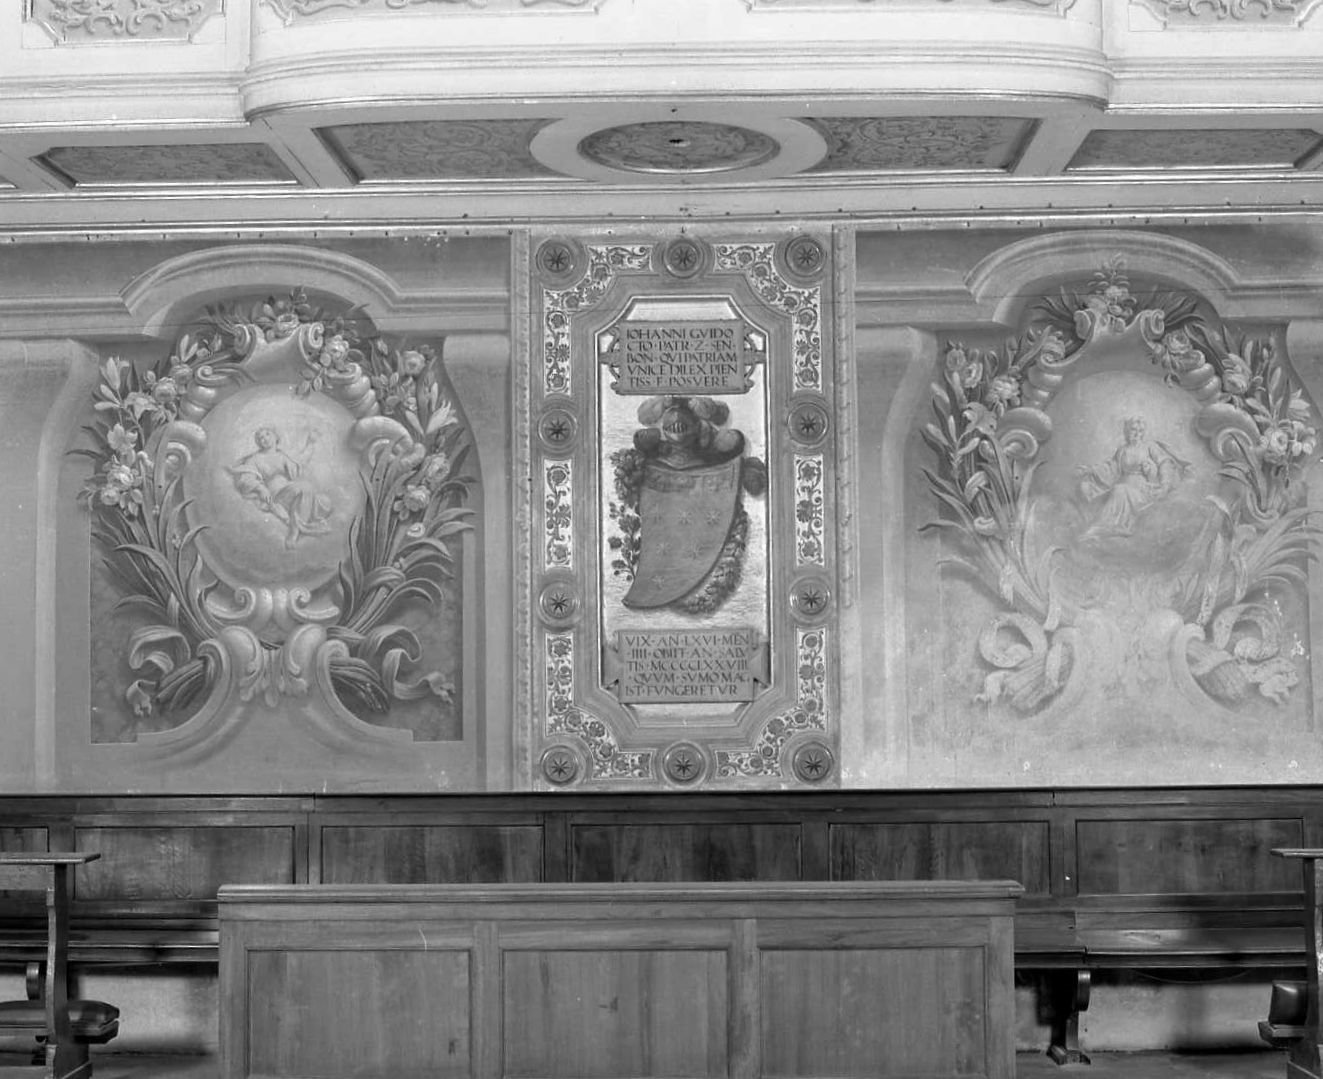 Motivi decorativi vegetali con vasi e festoni; finte architetture; allegorie (decorazione pittorica) di Orsoni Giuseppe (sec. XVIII)